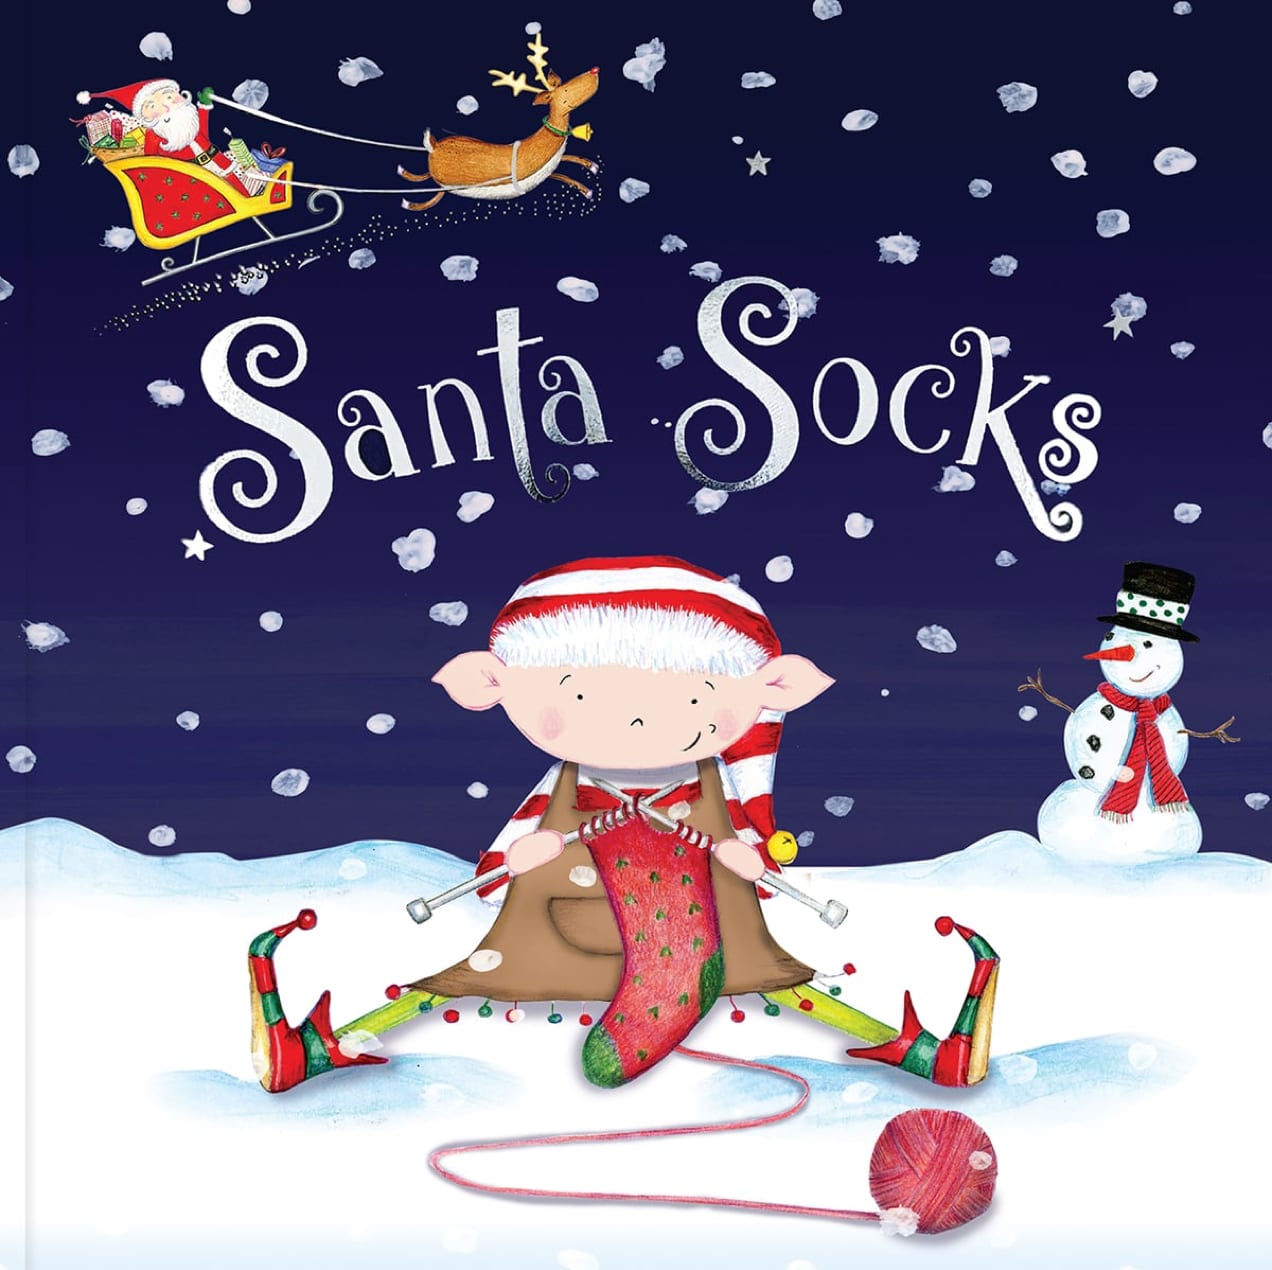 圣诞老人的袜子》一书中有一个小精灵在织袜子